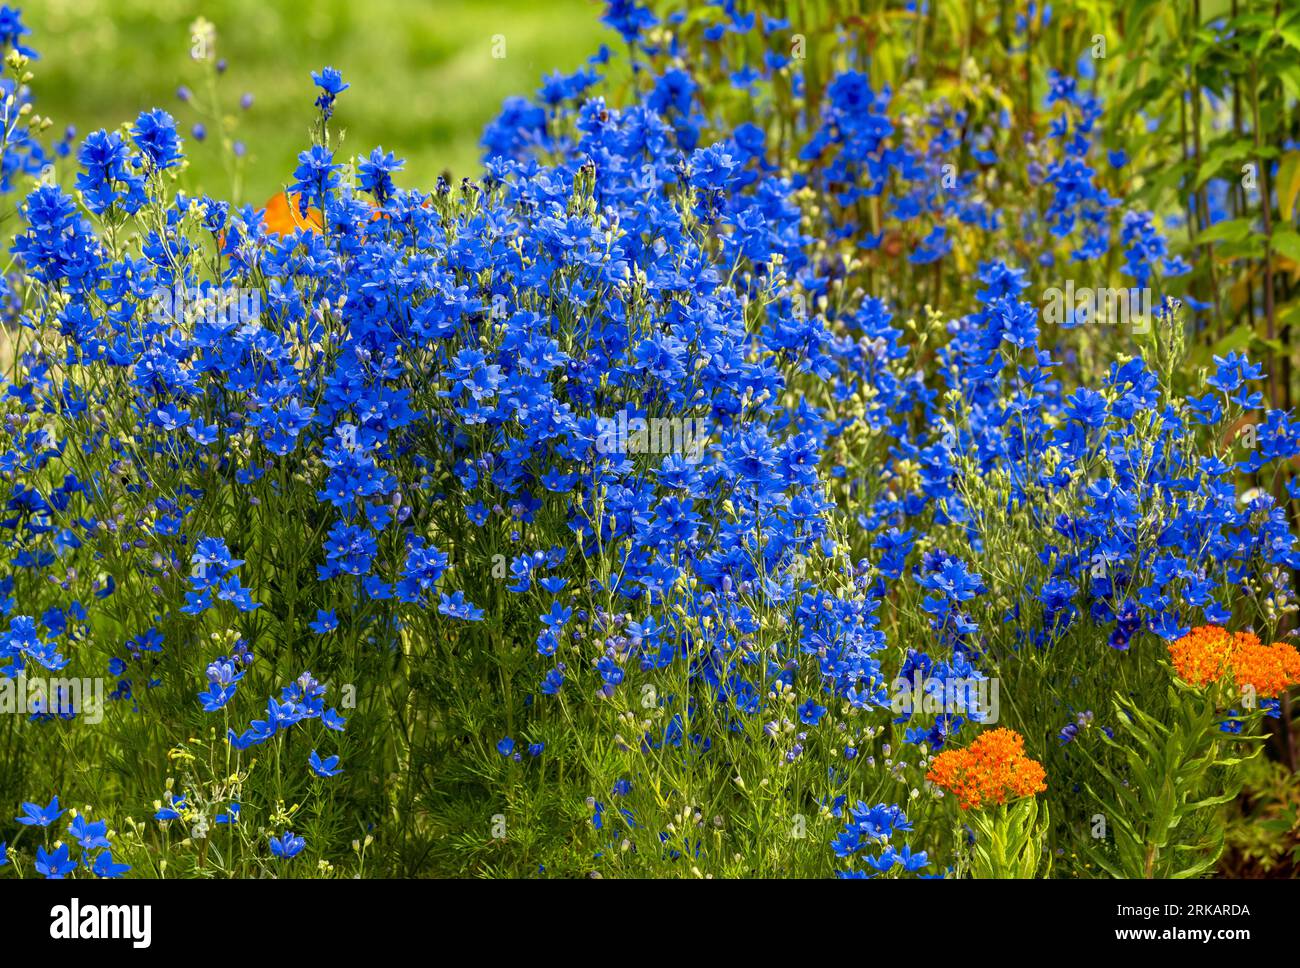 Ein wunderschönes blaues Stück Delphinium, Larkspur-Blumen, die in einem Garten wachsen, gemischt mit etwas Schmetterlings-Milkweed als Kontrast. Stockfoto